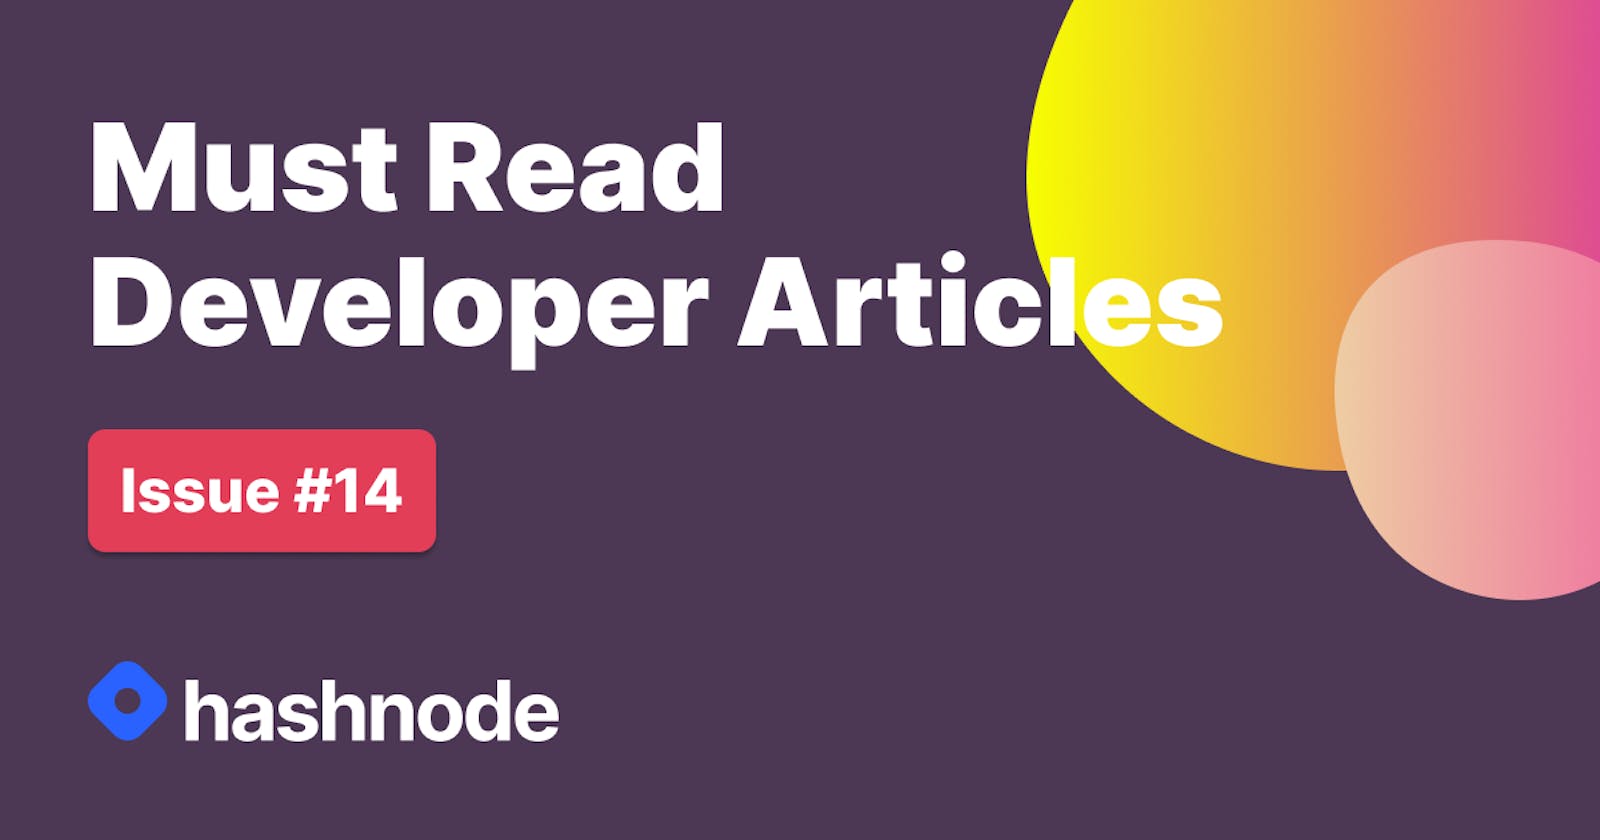 Must Read Developer Articles on Hashnode - #14